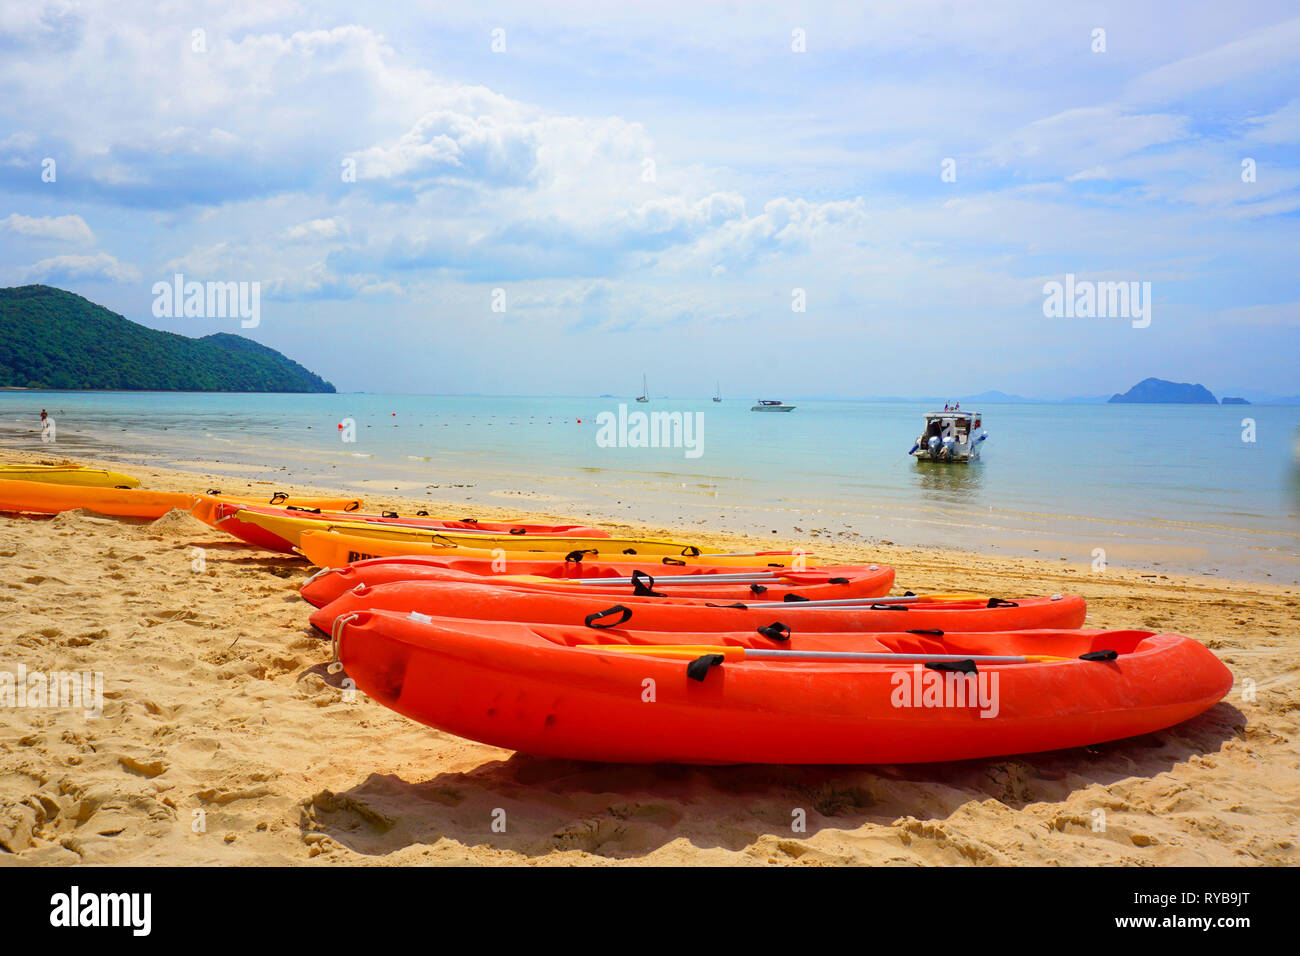 Si tratta di una barca in fibra che utilizza per il trasporto e inoltre è possibile vedere il mare, colline in background e il suo una foto cattura in corrispondenza di un'isola di Phuket, Tailandia Foto Stock